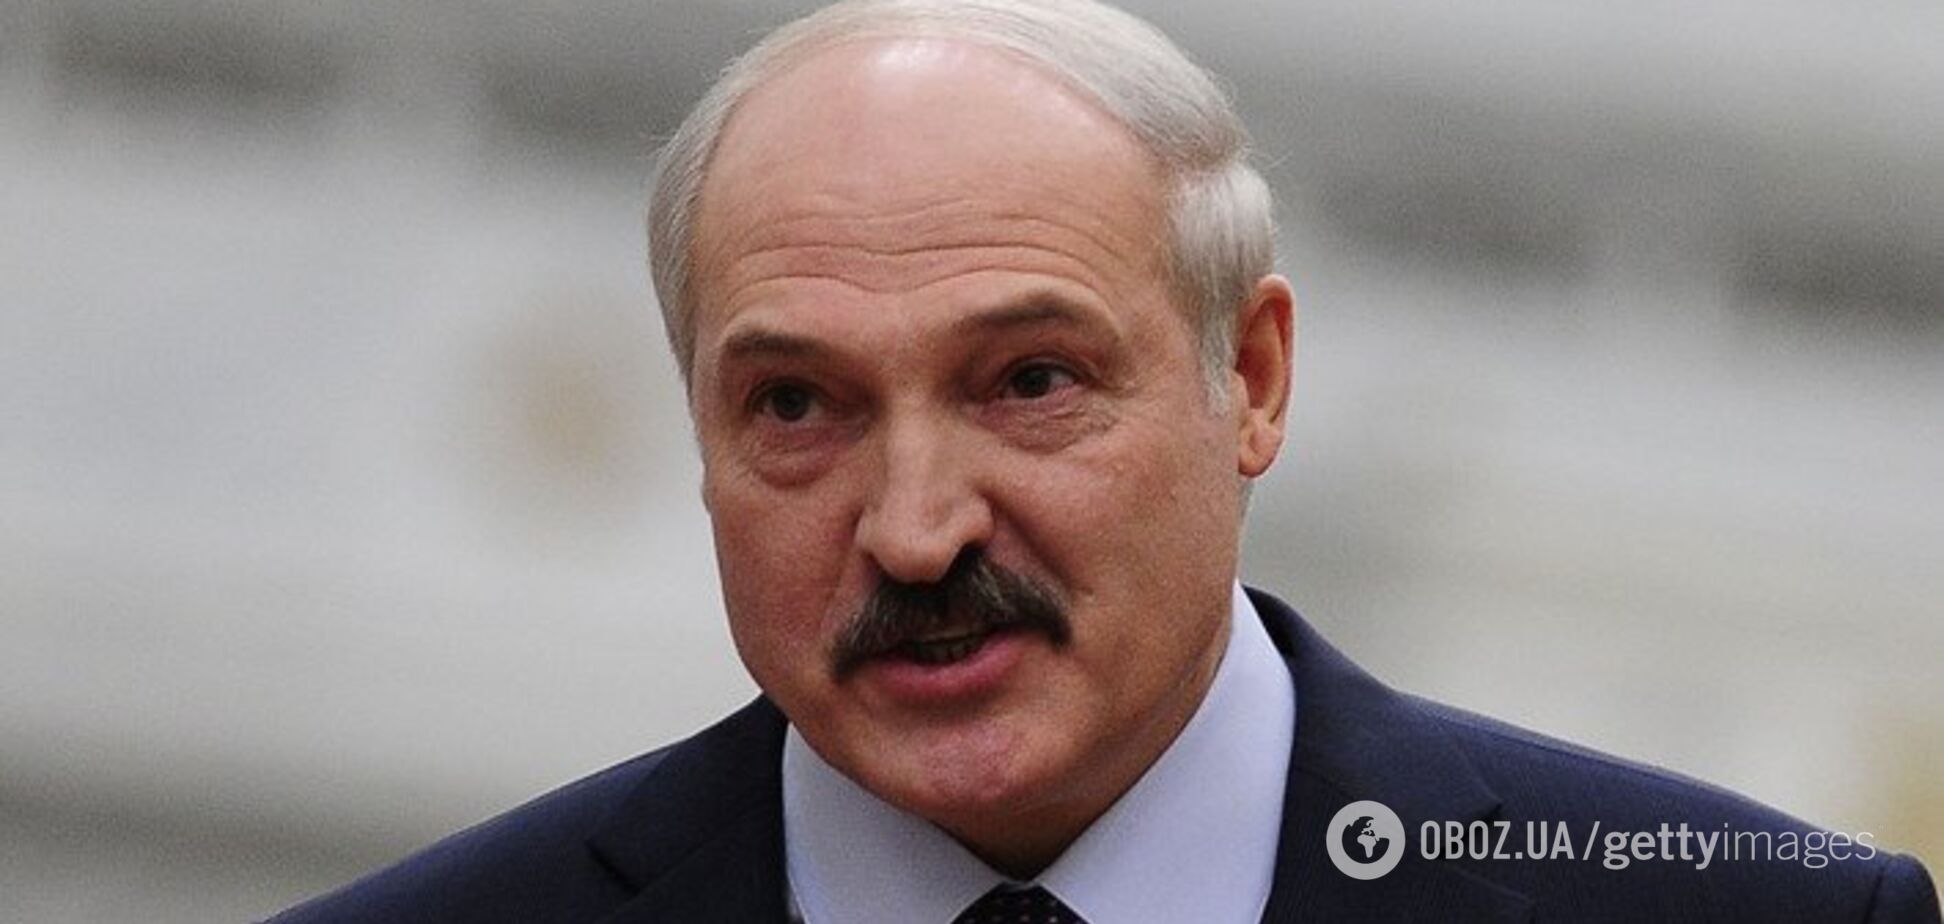 'Мало не покажется!' Лукашенко пригрозил ответом на ракеты в Украине